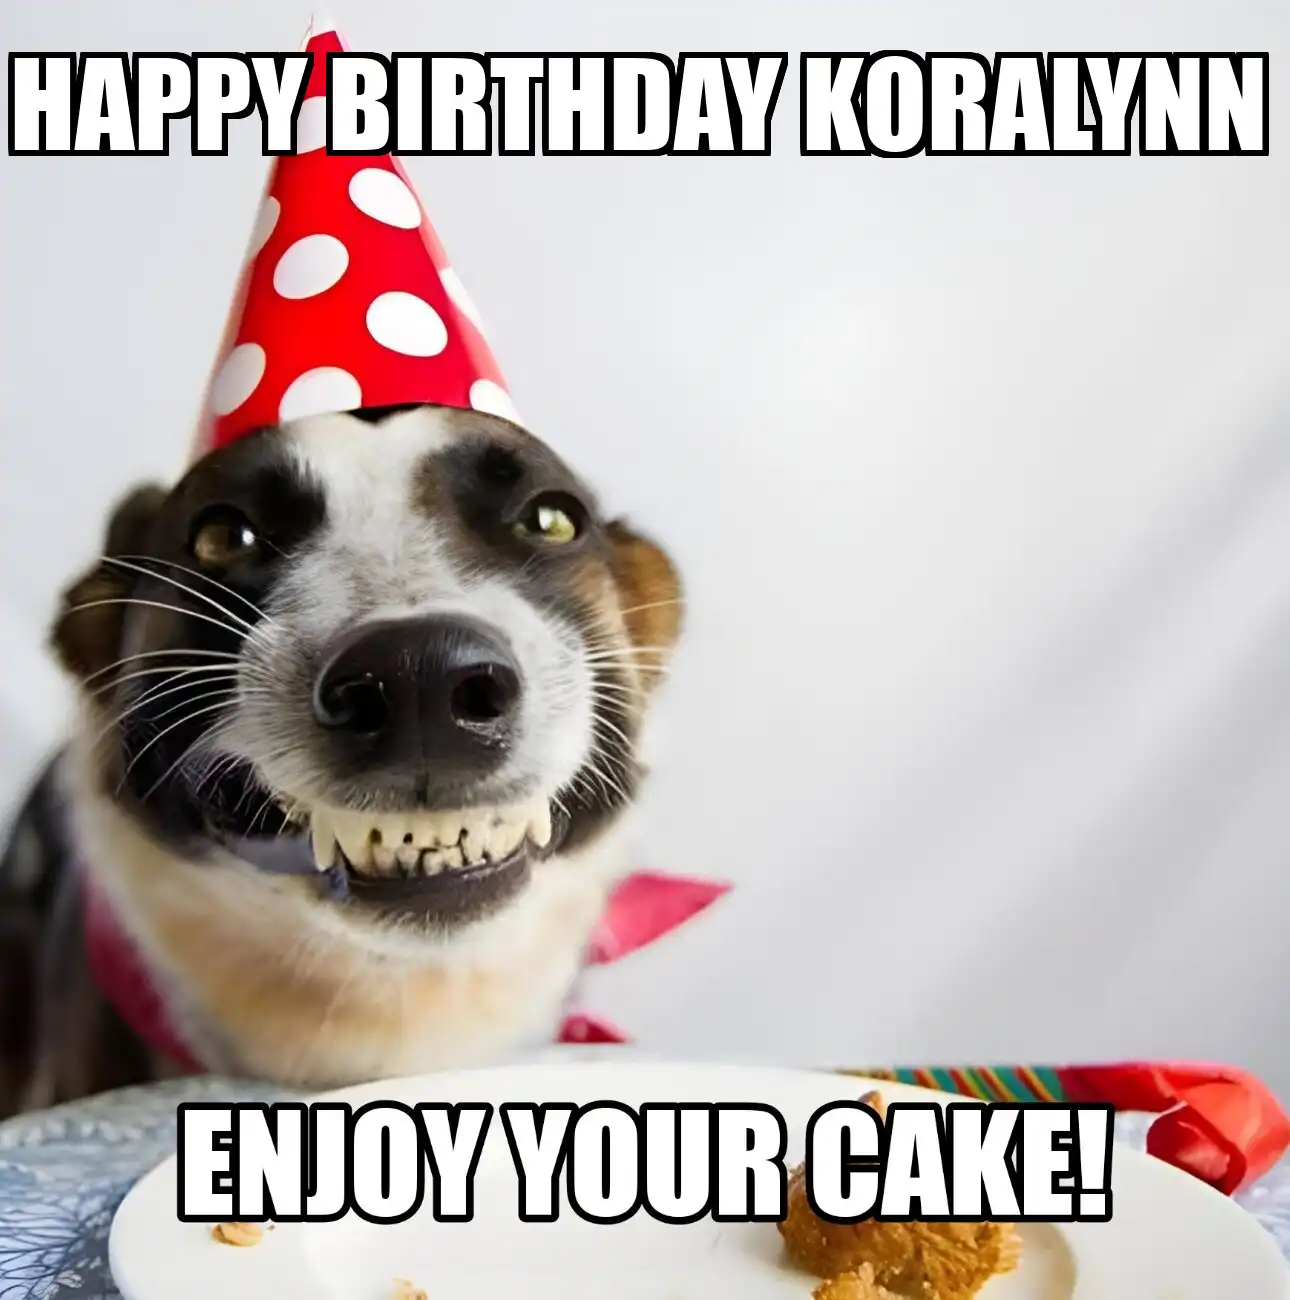 Happy Birthday Koralynn Enjoy Your Cake Dog Meme